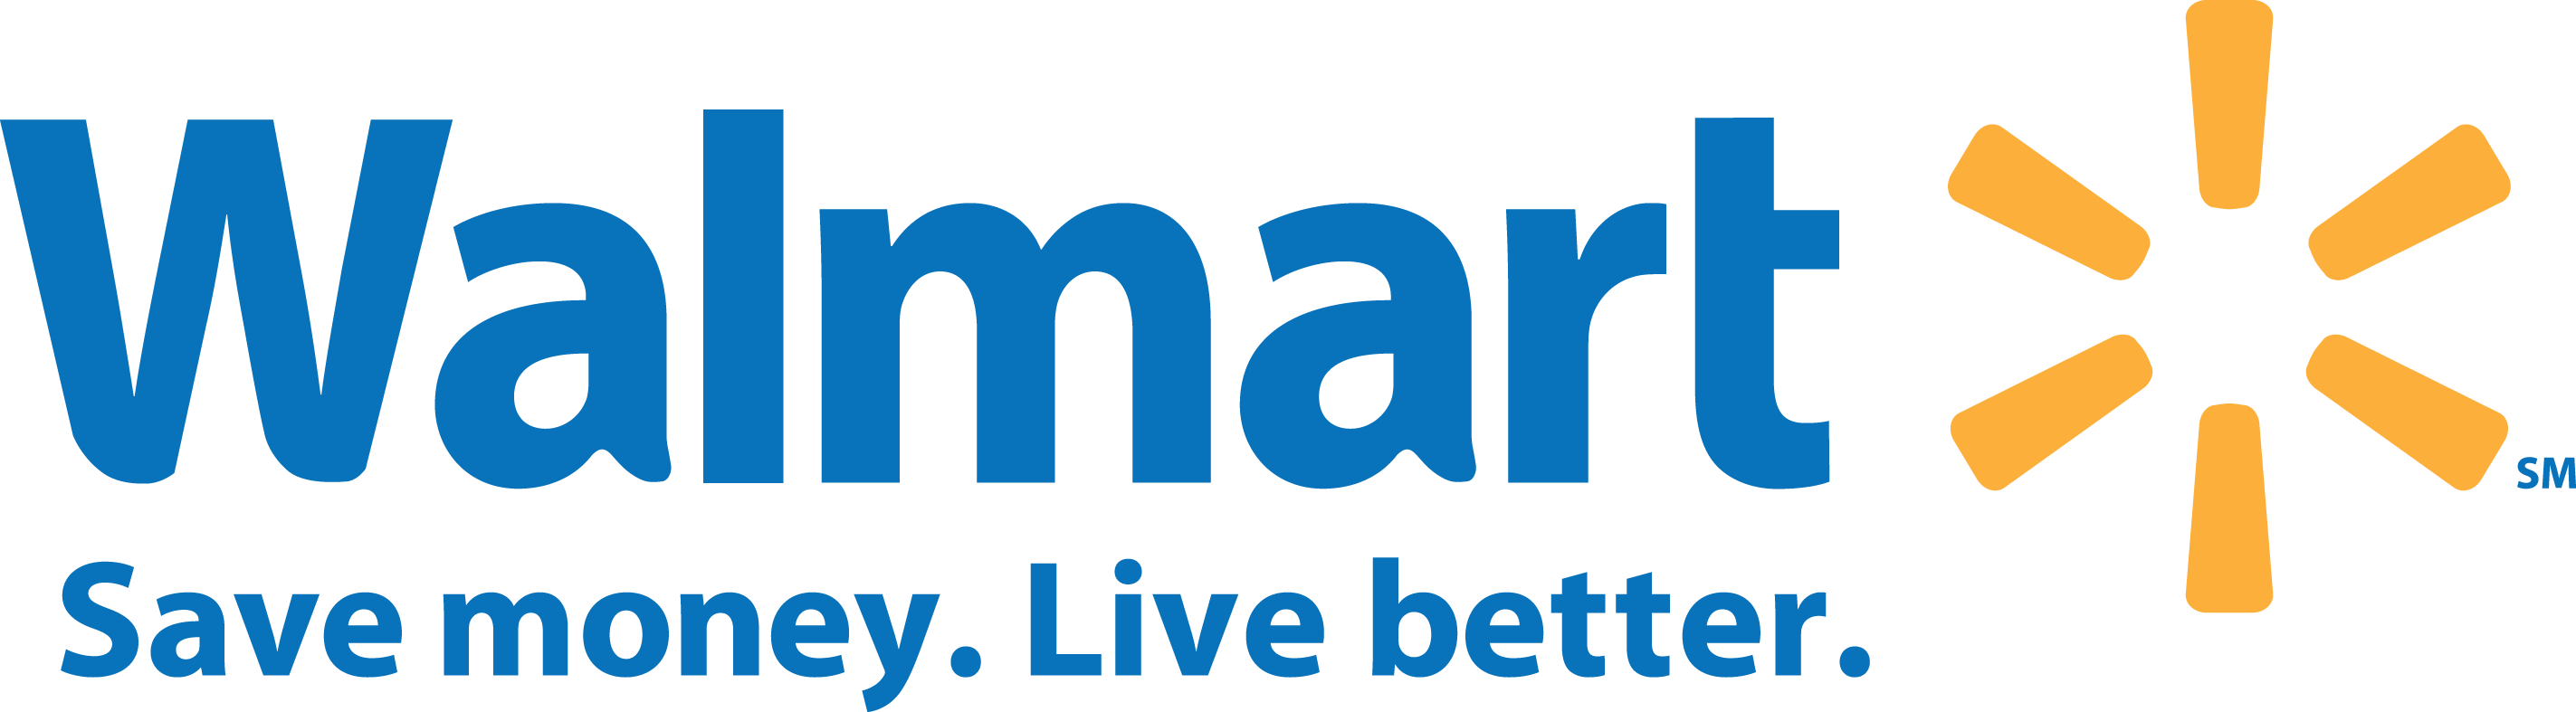 Wal-Mart logo.